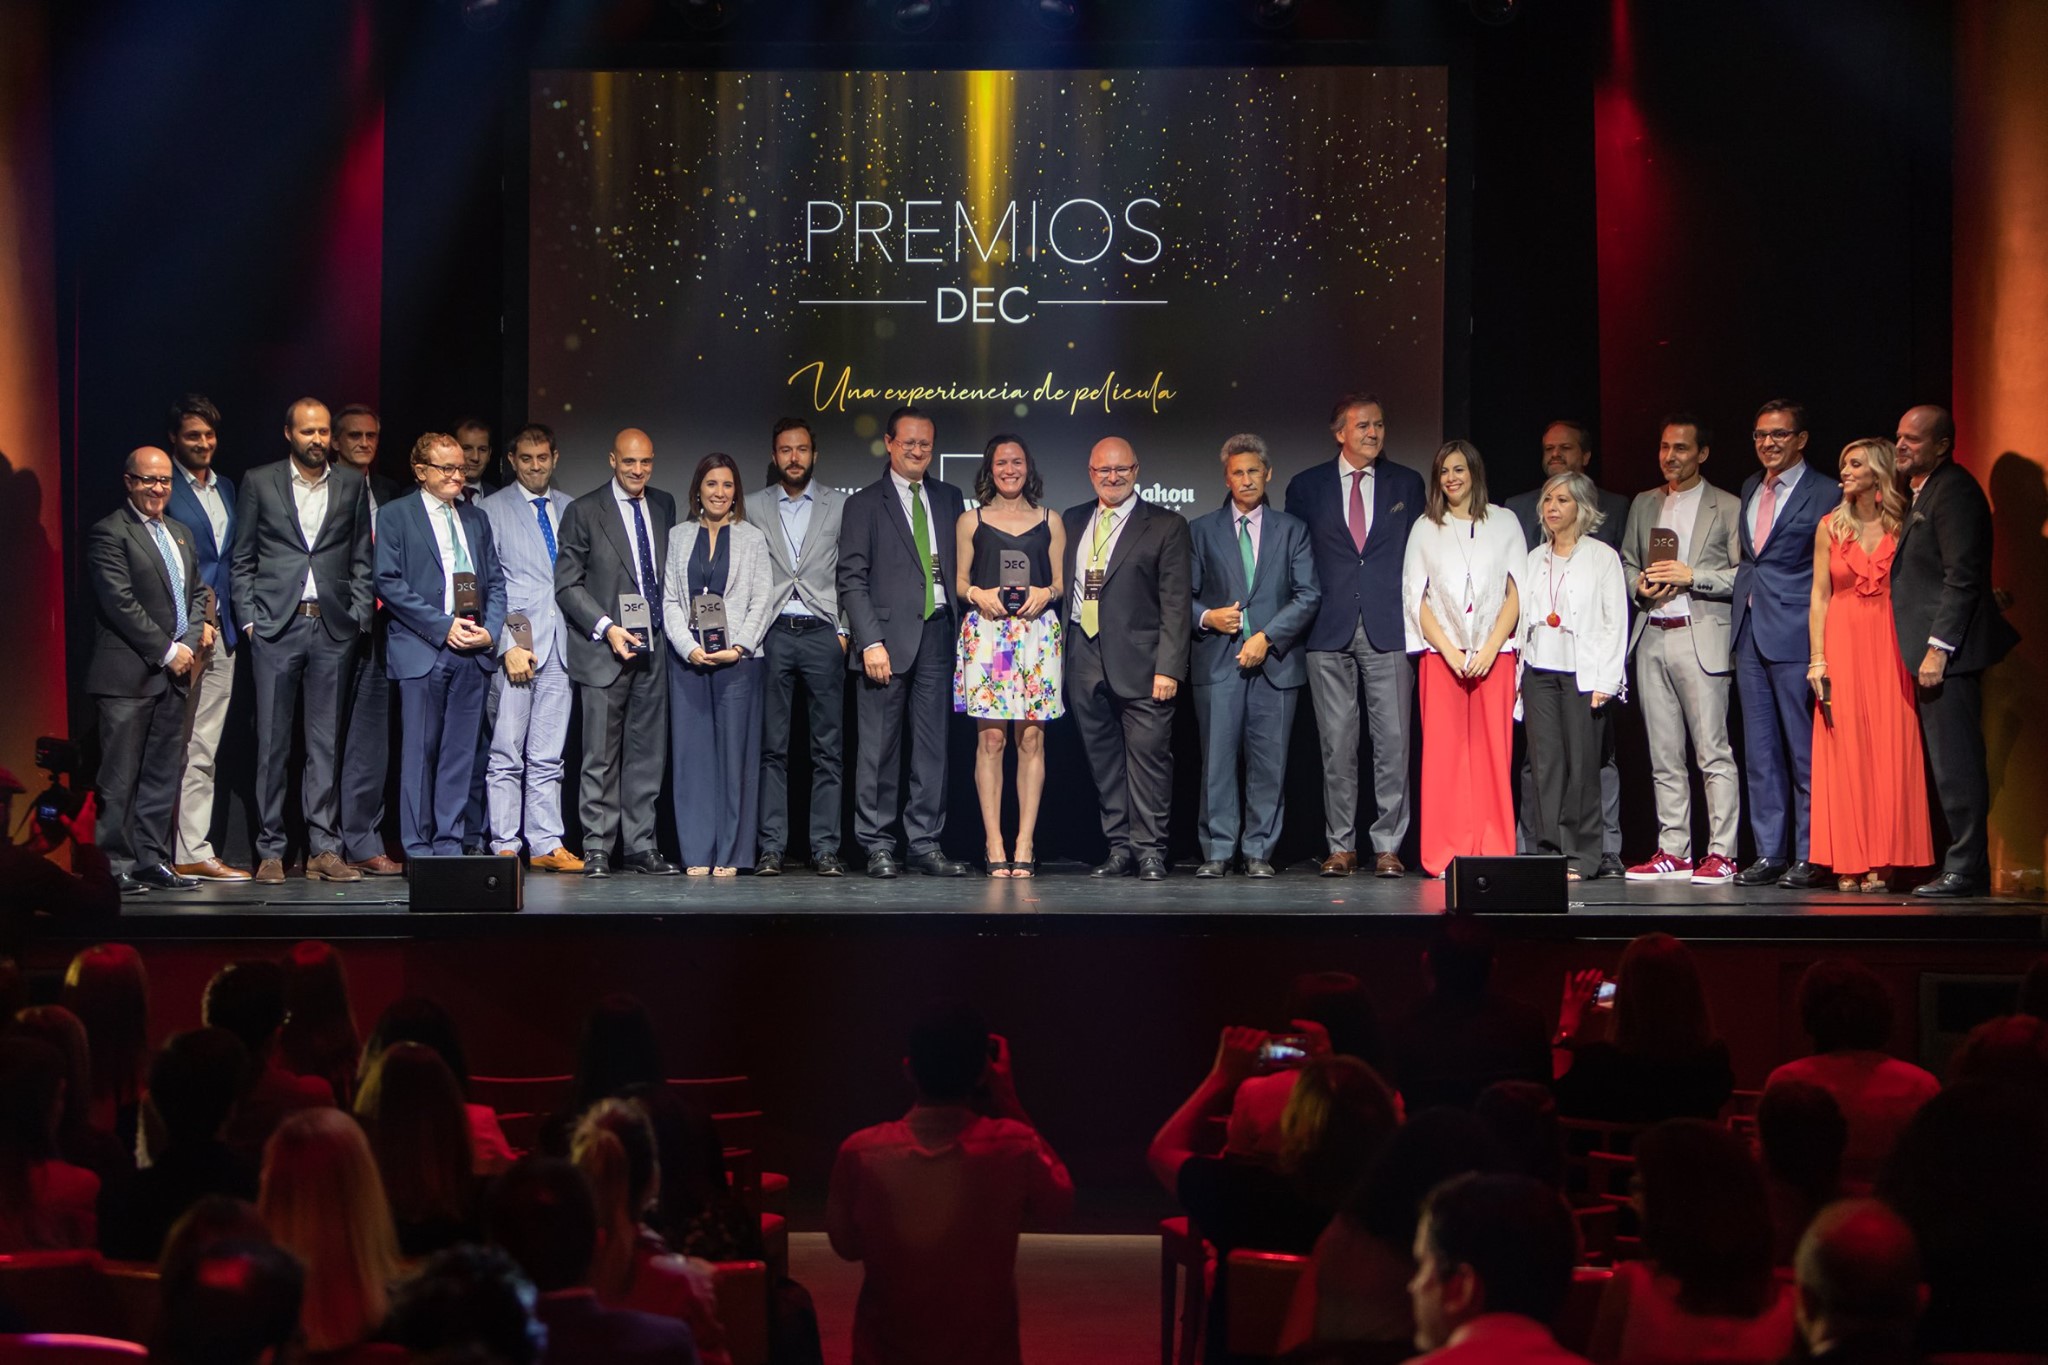 Premios DEC 2019 - Premiados